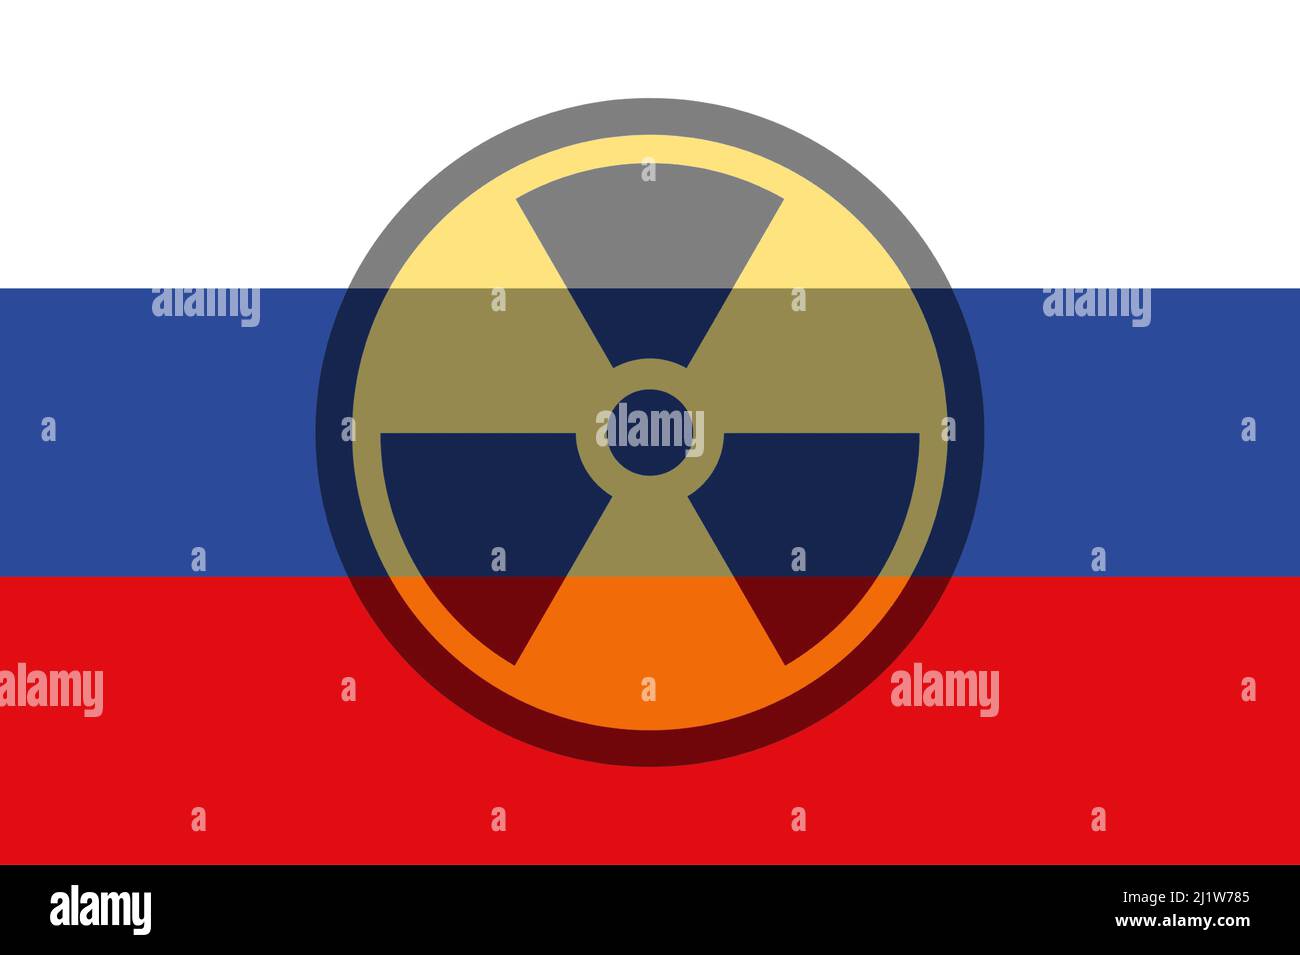 Russland. Atomwaffen. Russland Flagge mit chemischen Waffen Symbol. Illustration der Flagge Russlands. Horizontales Design. Abstraktes Design. Stockfoto